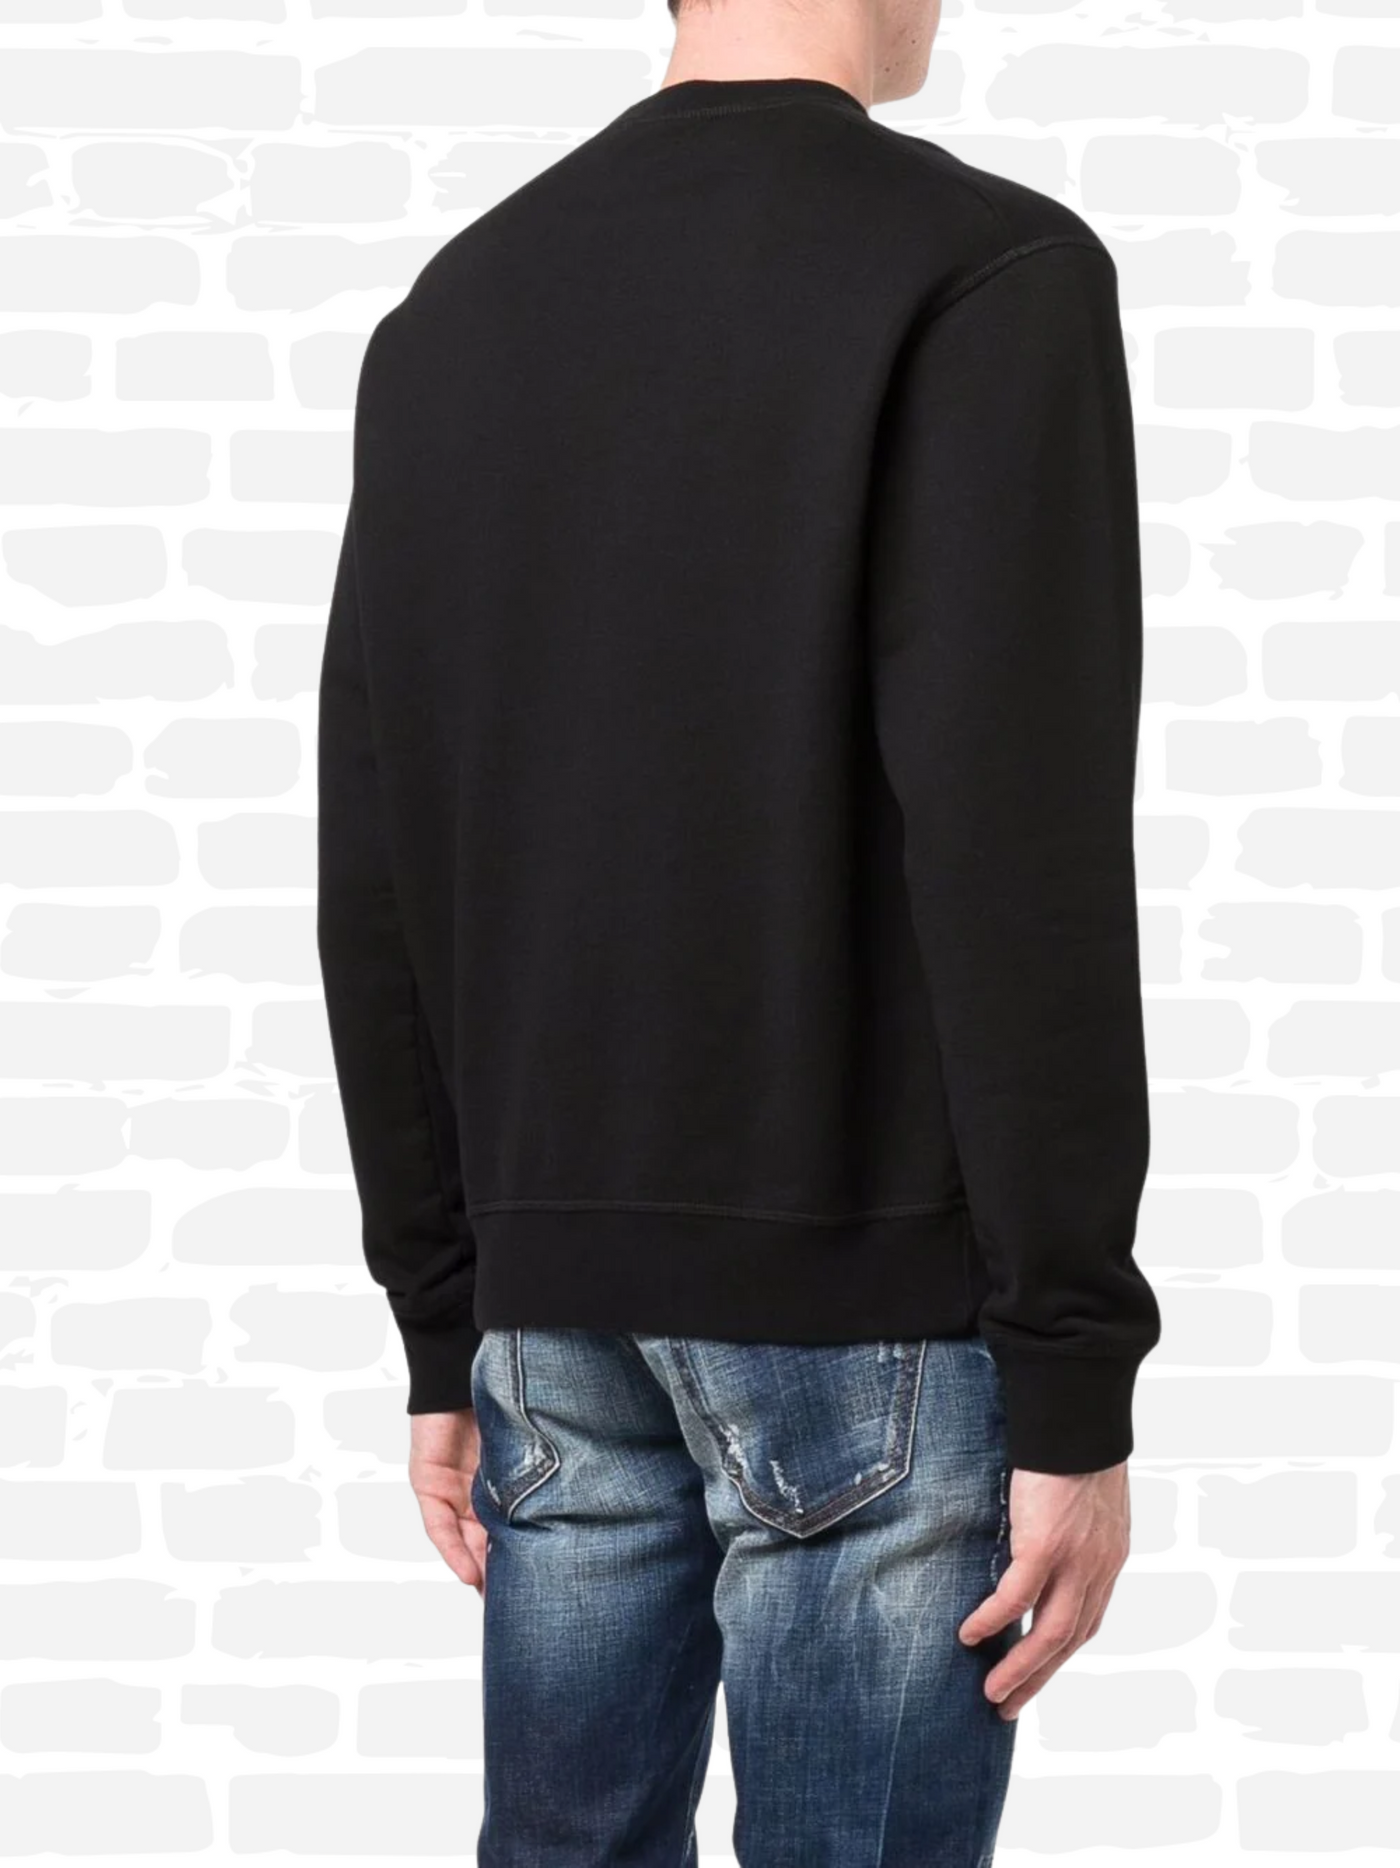 דיסקוורד סווטשירט צבע שחור Icon-Print sweatshirt